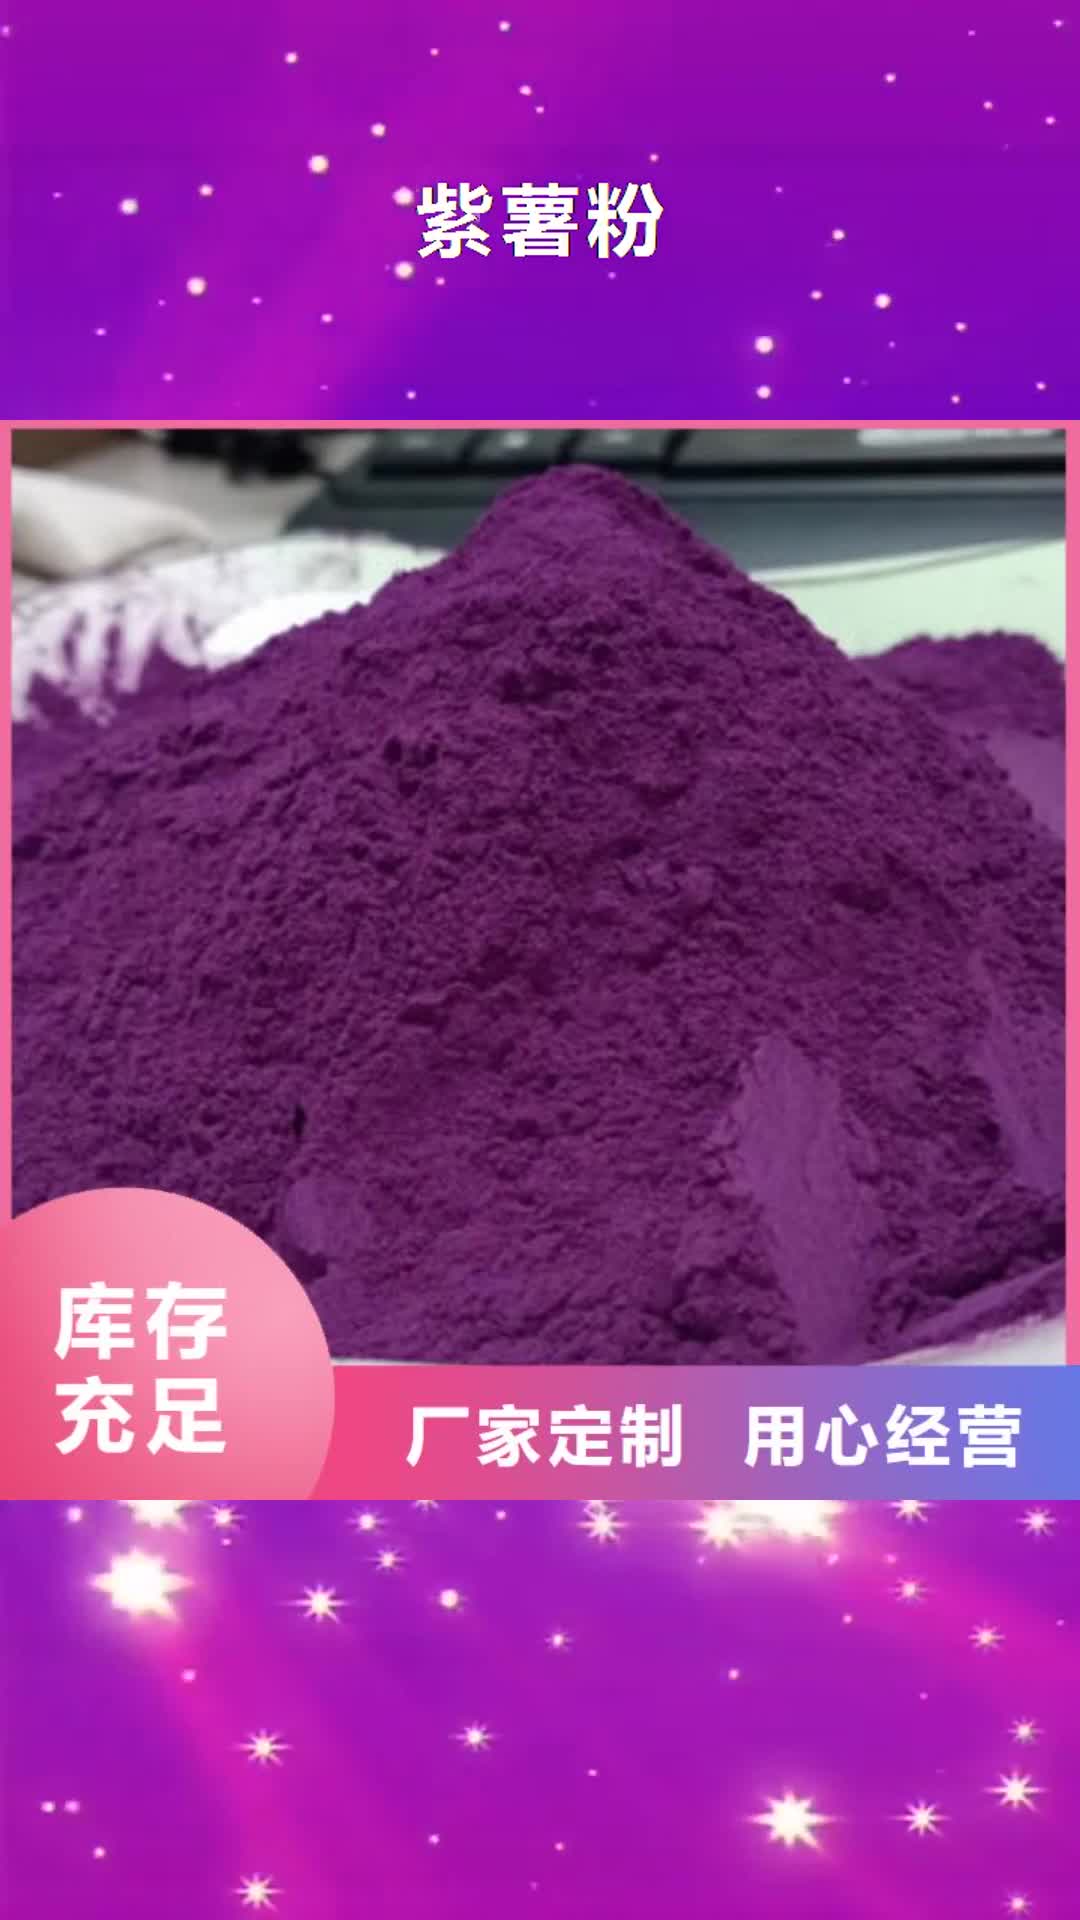 河北【紫薯粉】,胡萝卜粉诚信商家服务热情